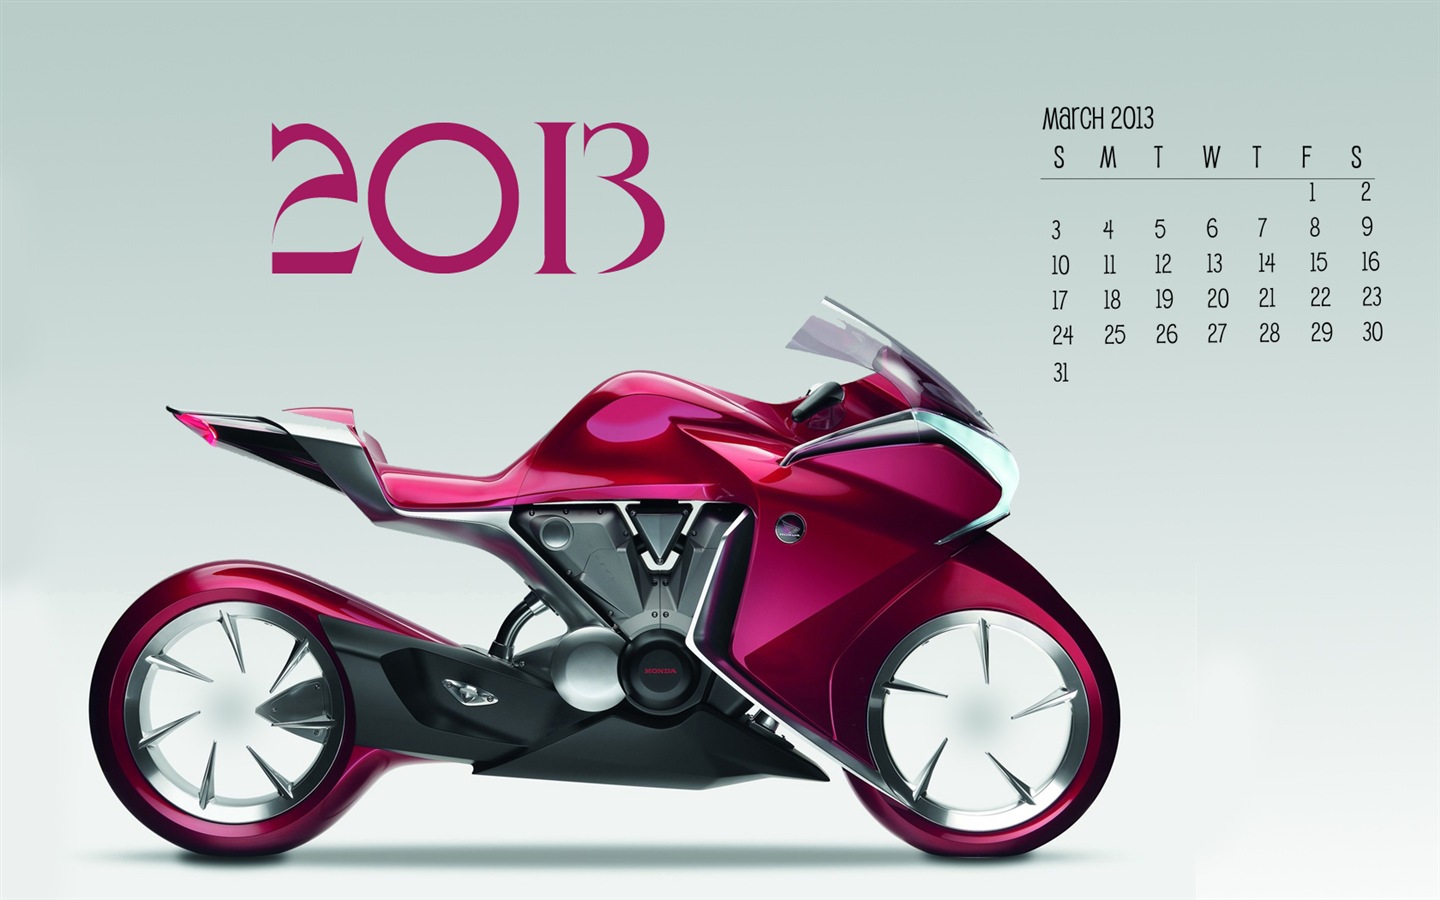 03 2013 pantalla de calendario (2) #19 - 1440x900